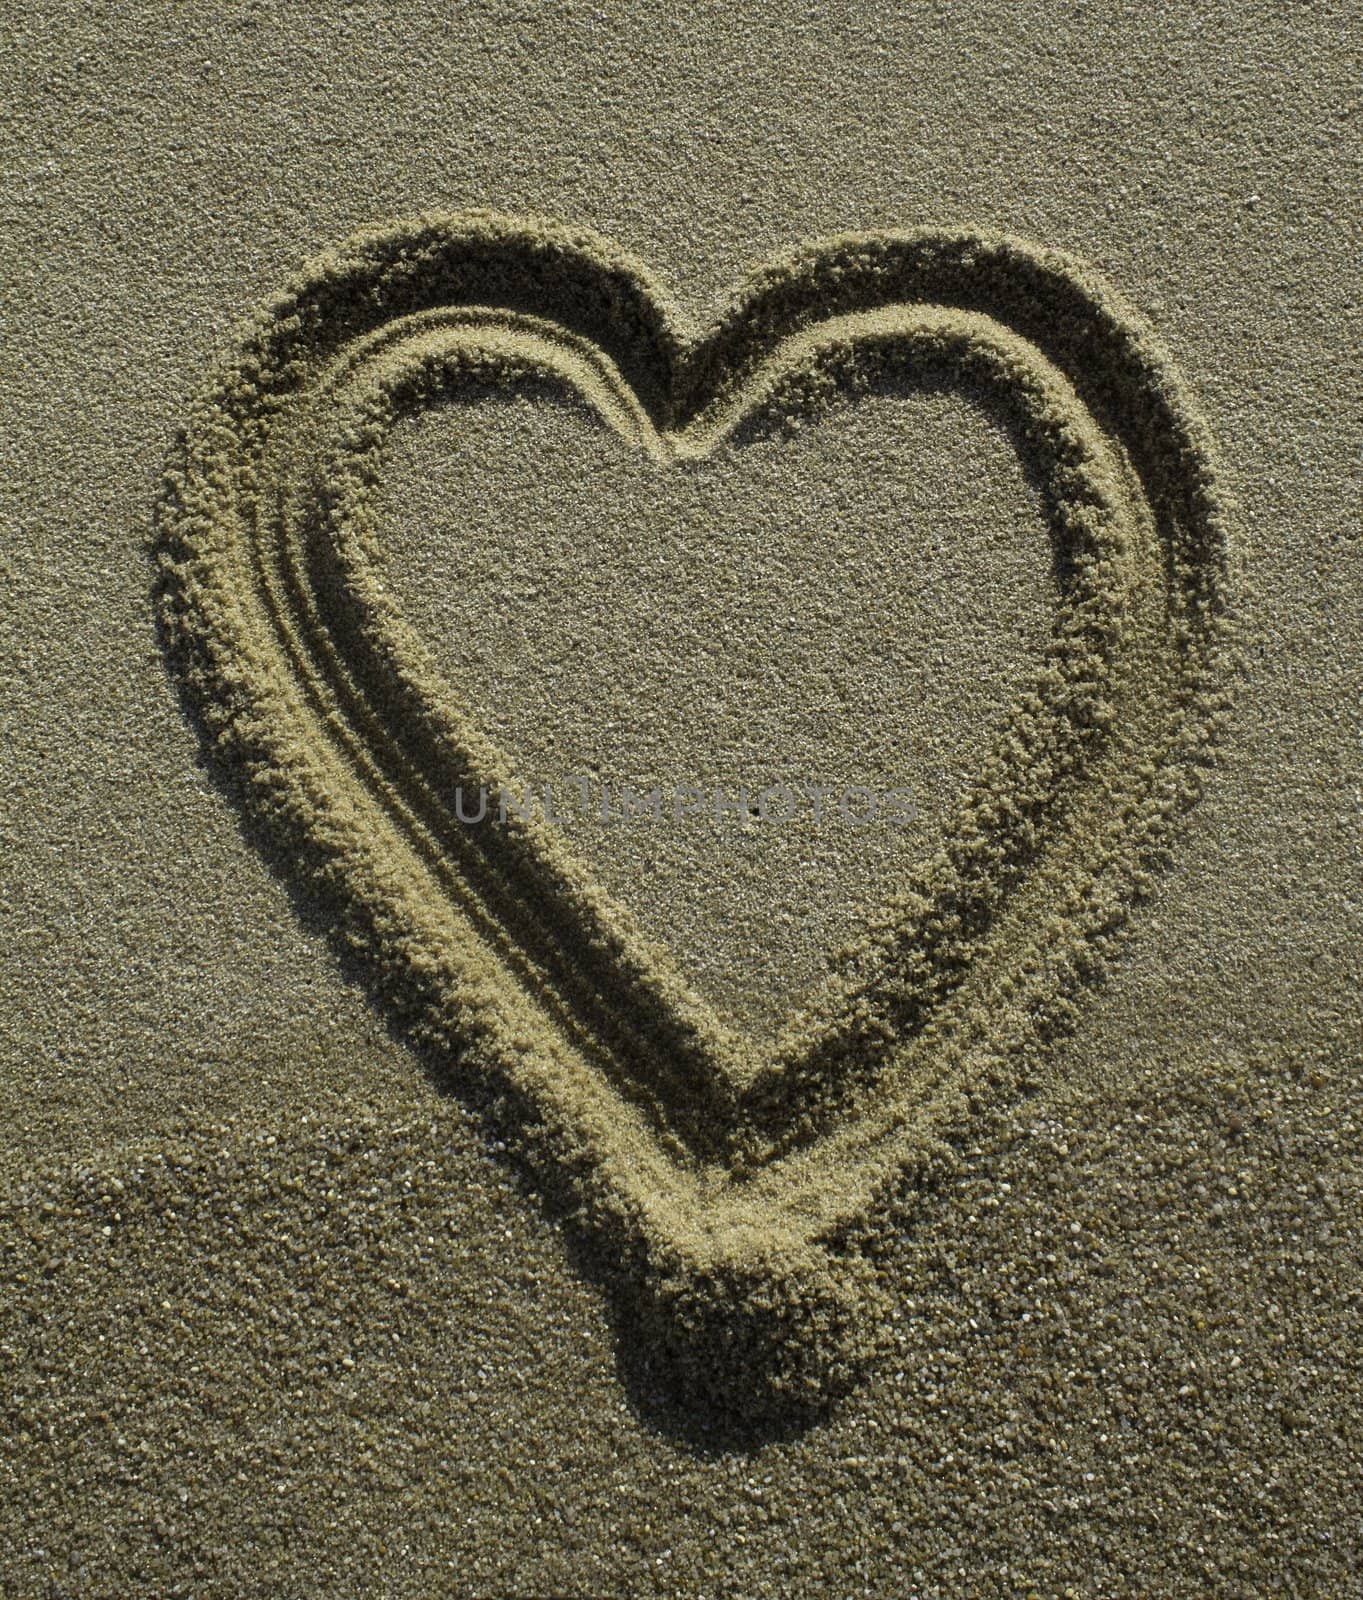 heart drawn in the beach







heart